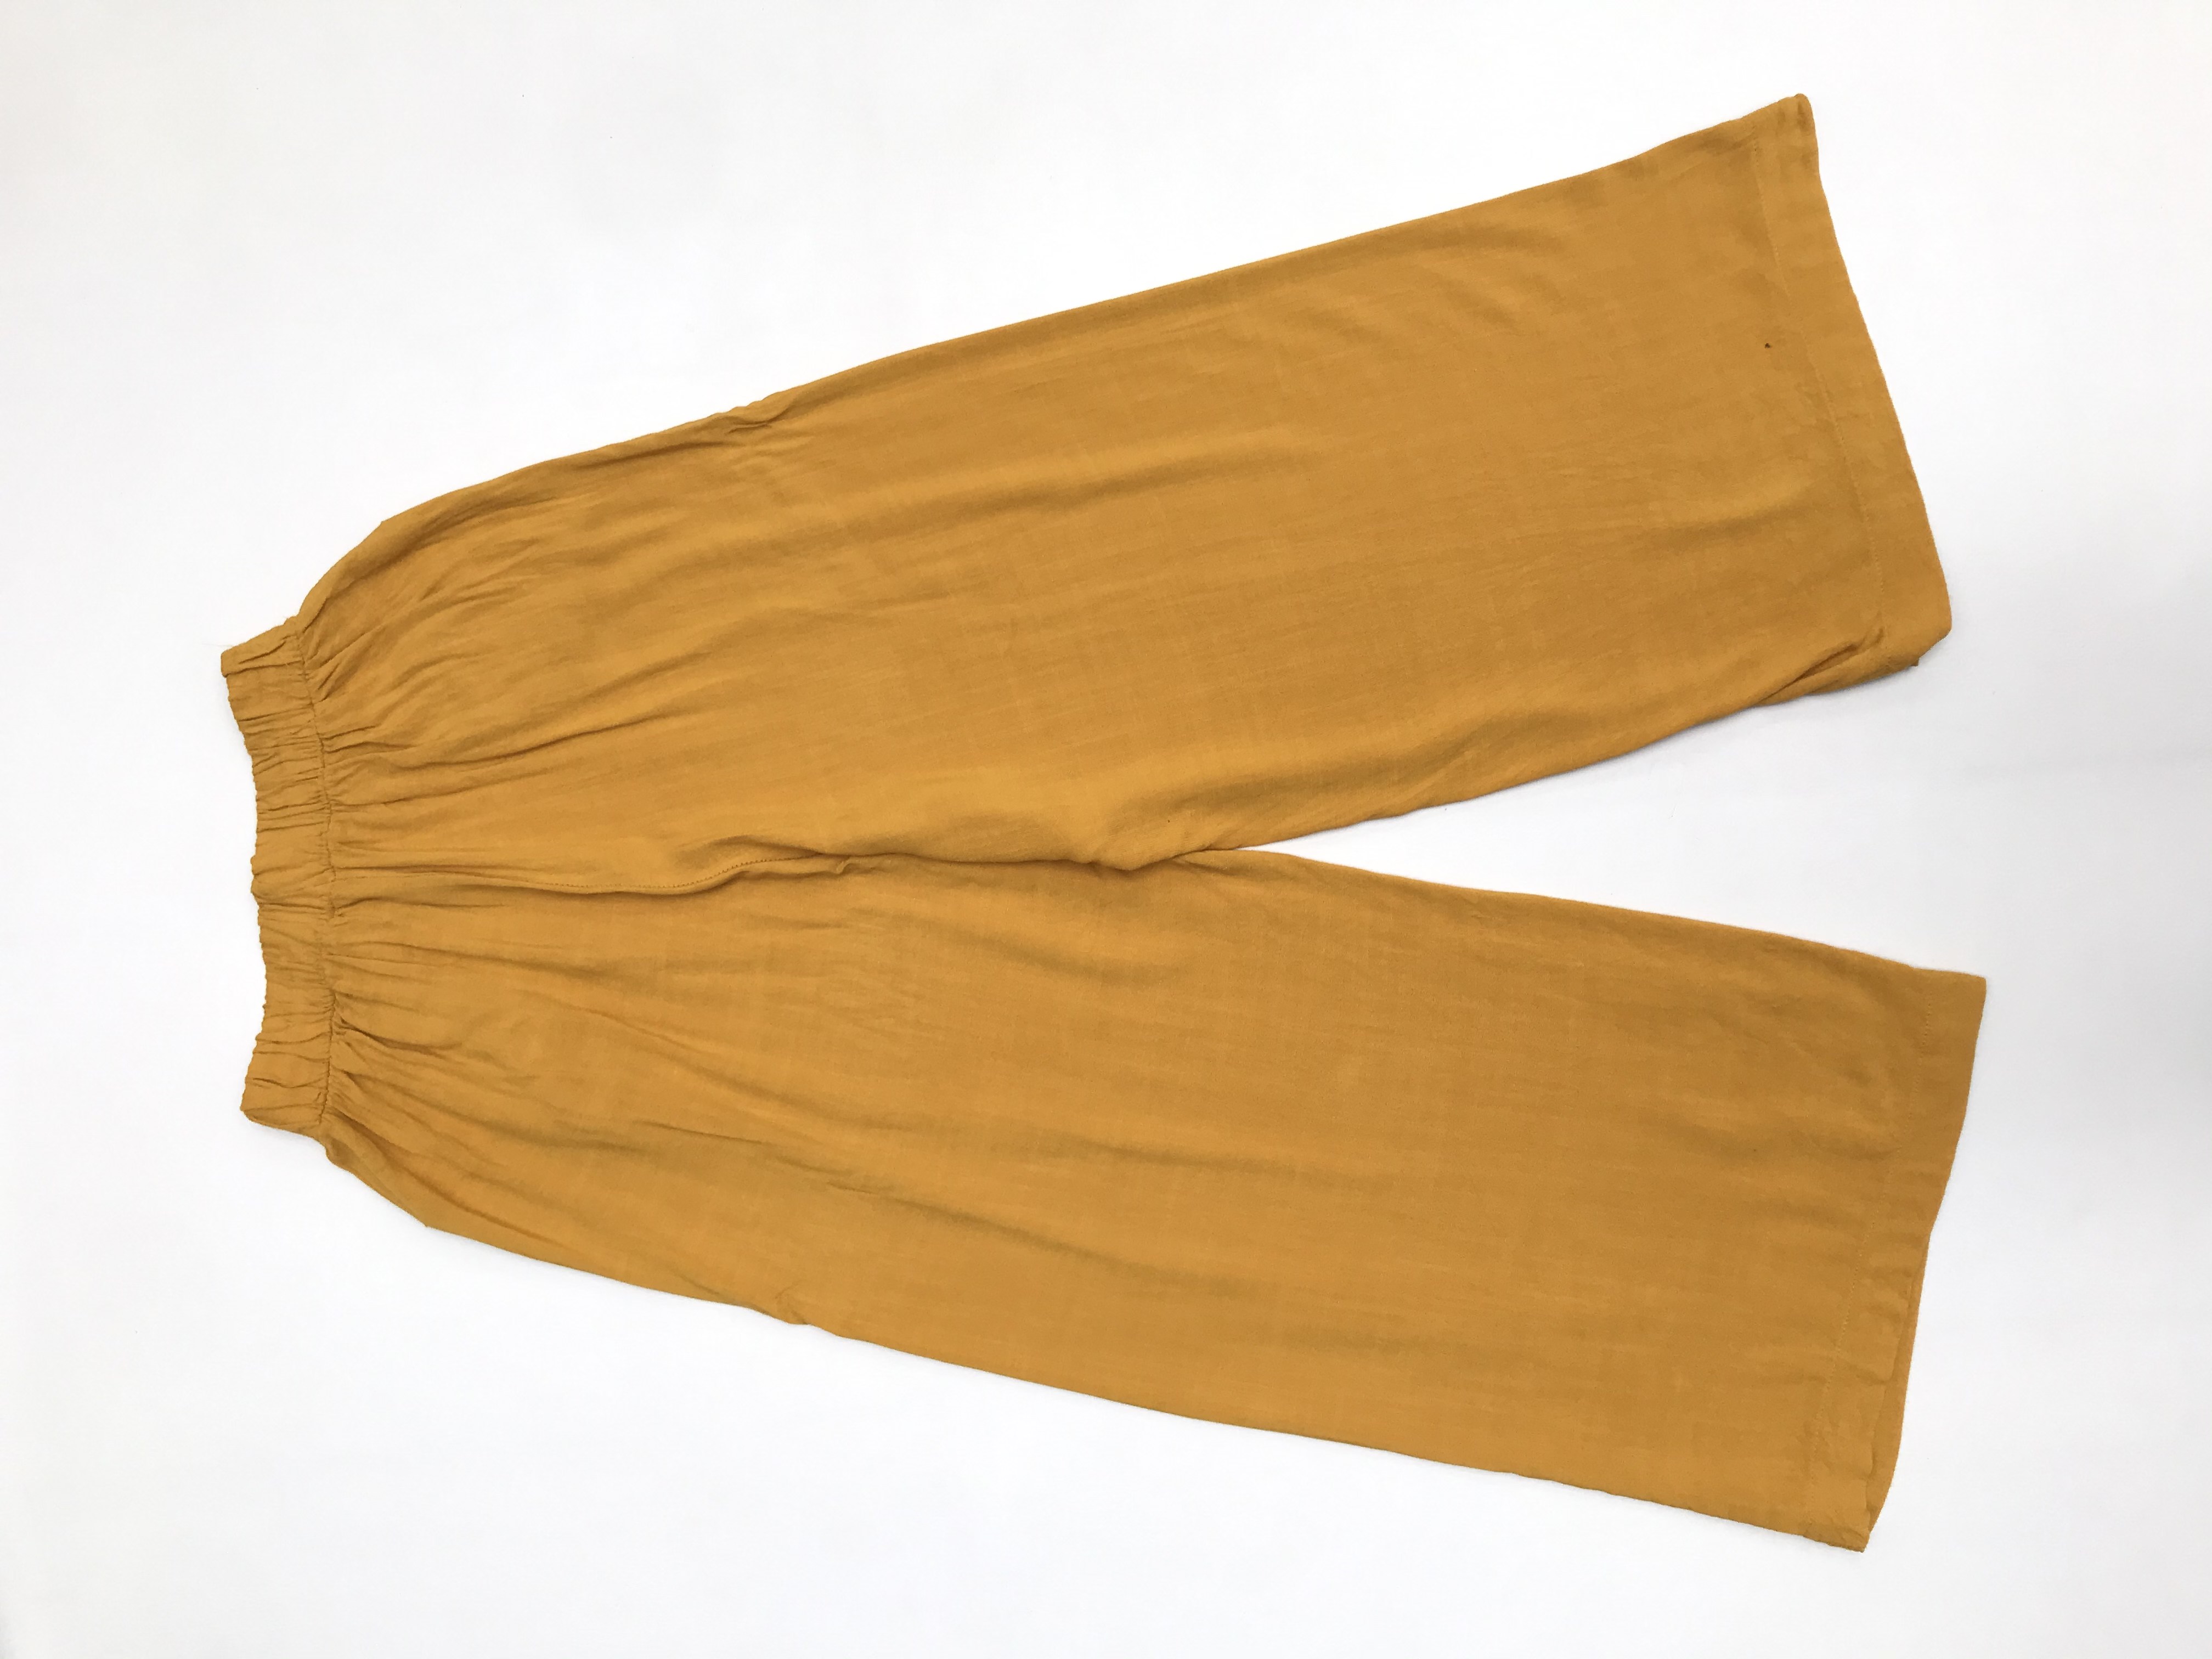 Pantalón mostaza tipo culotte a la cintura con doble fila de botones y bolsillos delanteros 